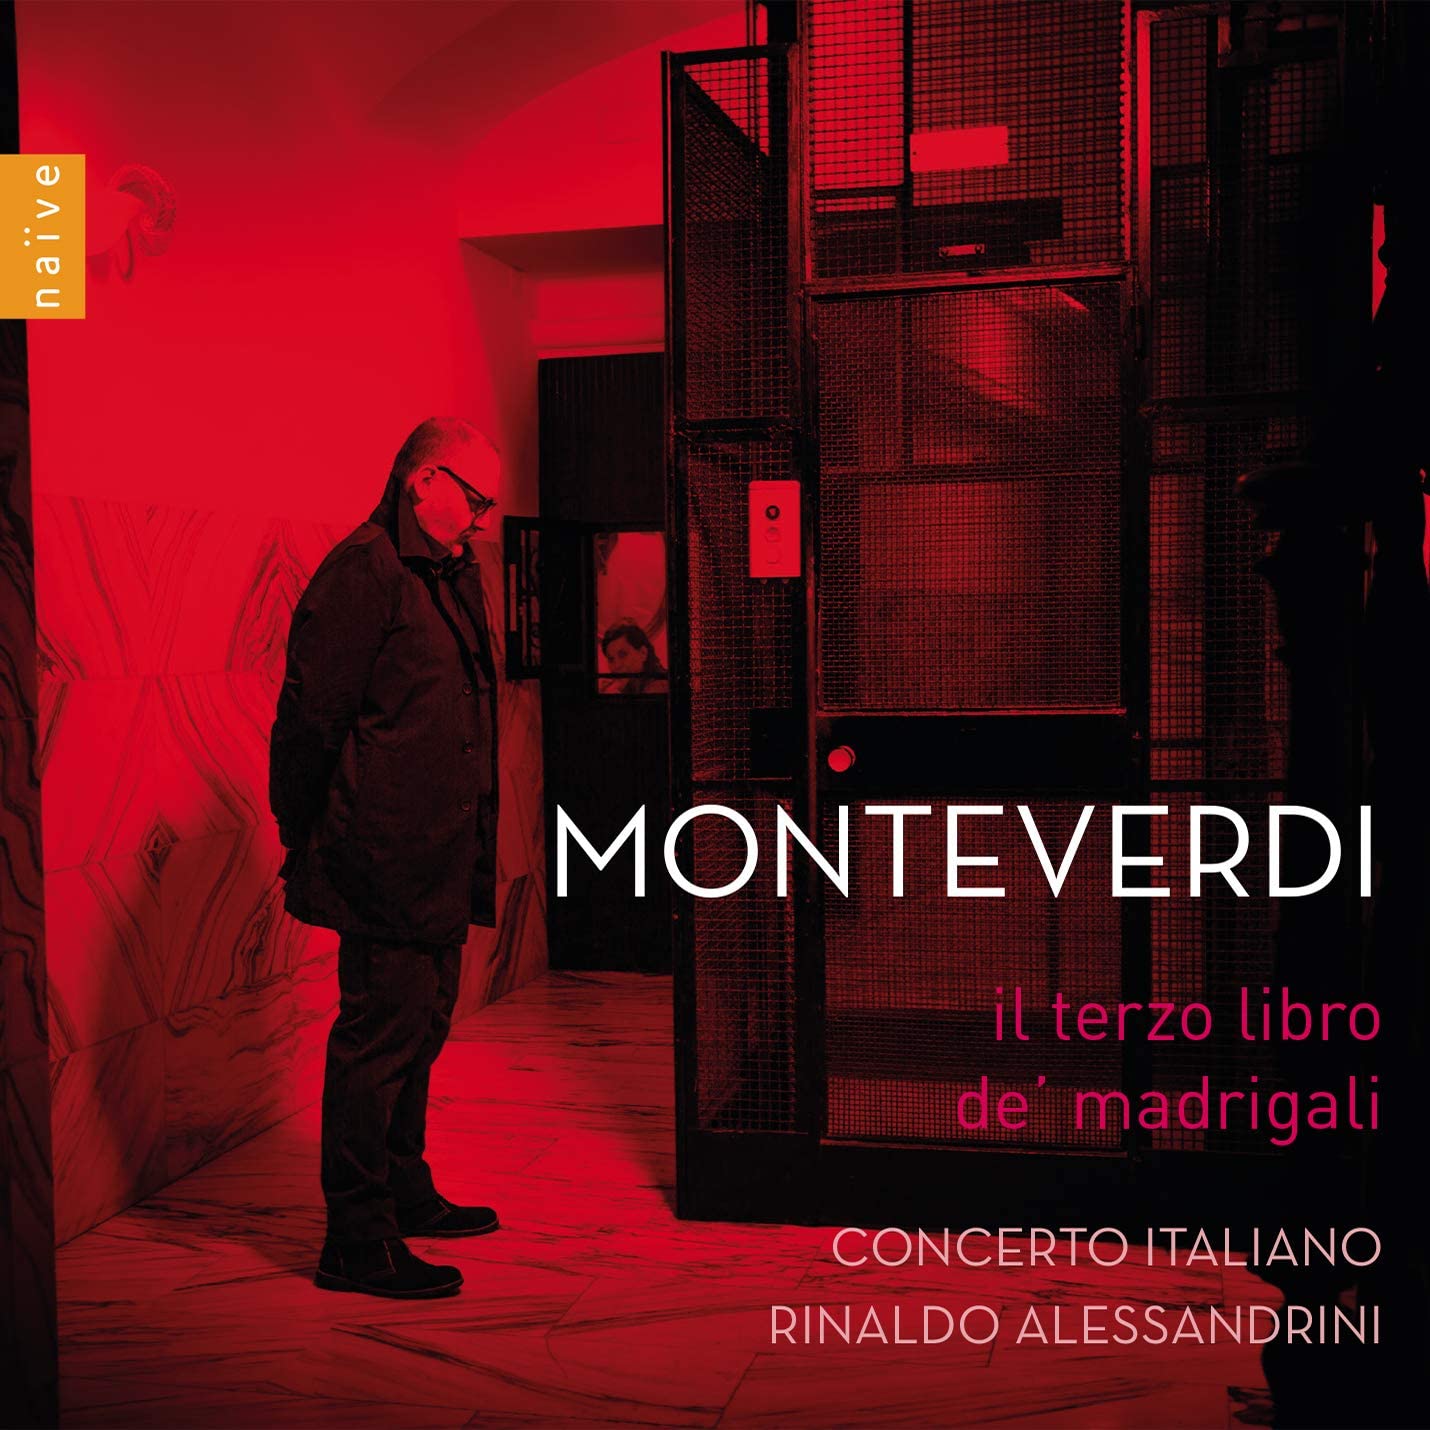 Concerto Italiano Monteverdi terzo libro